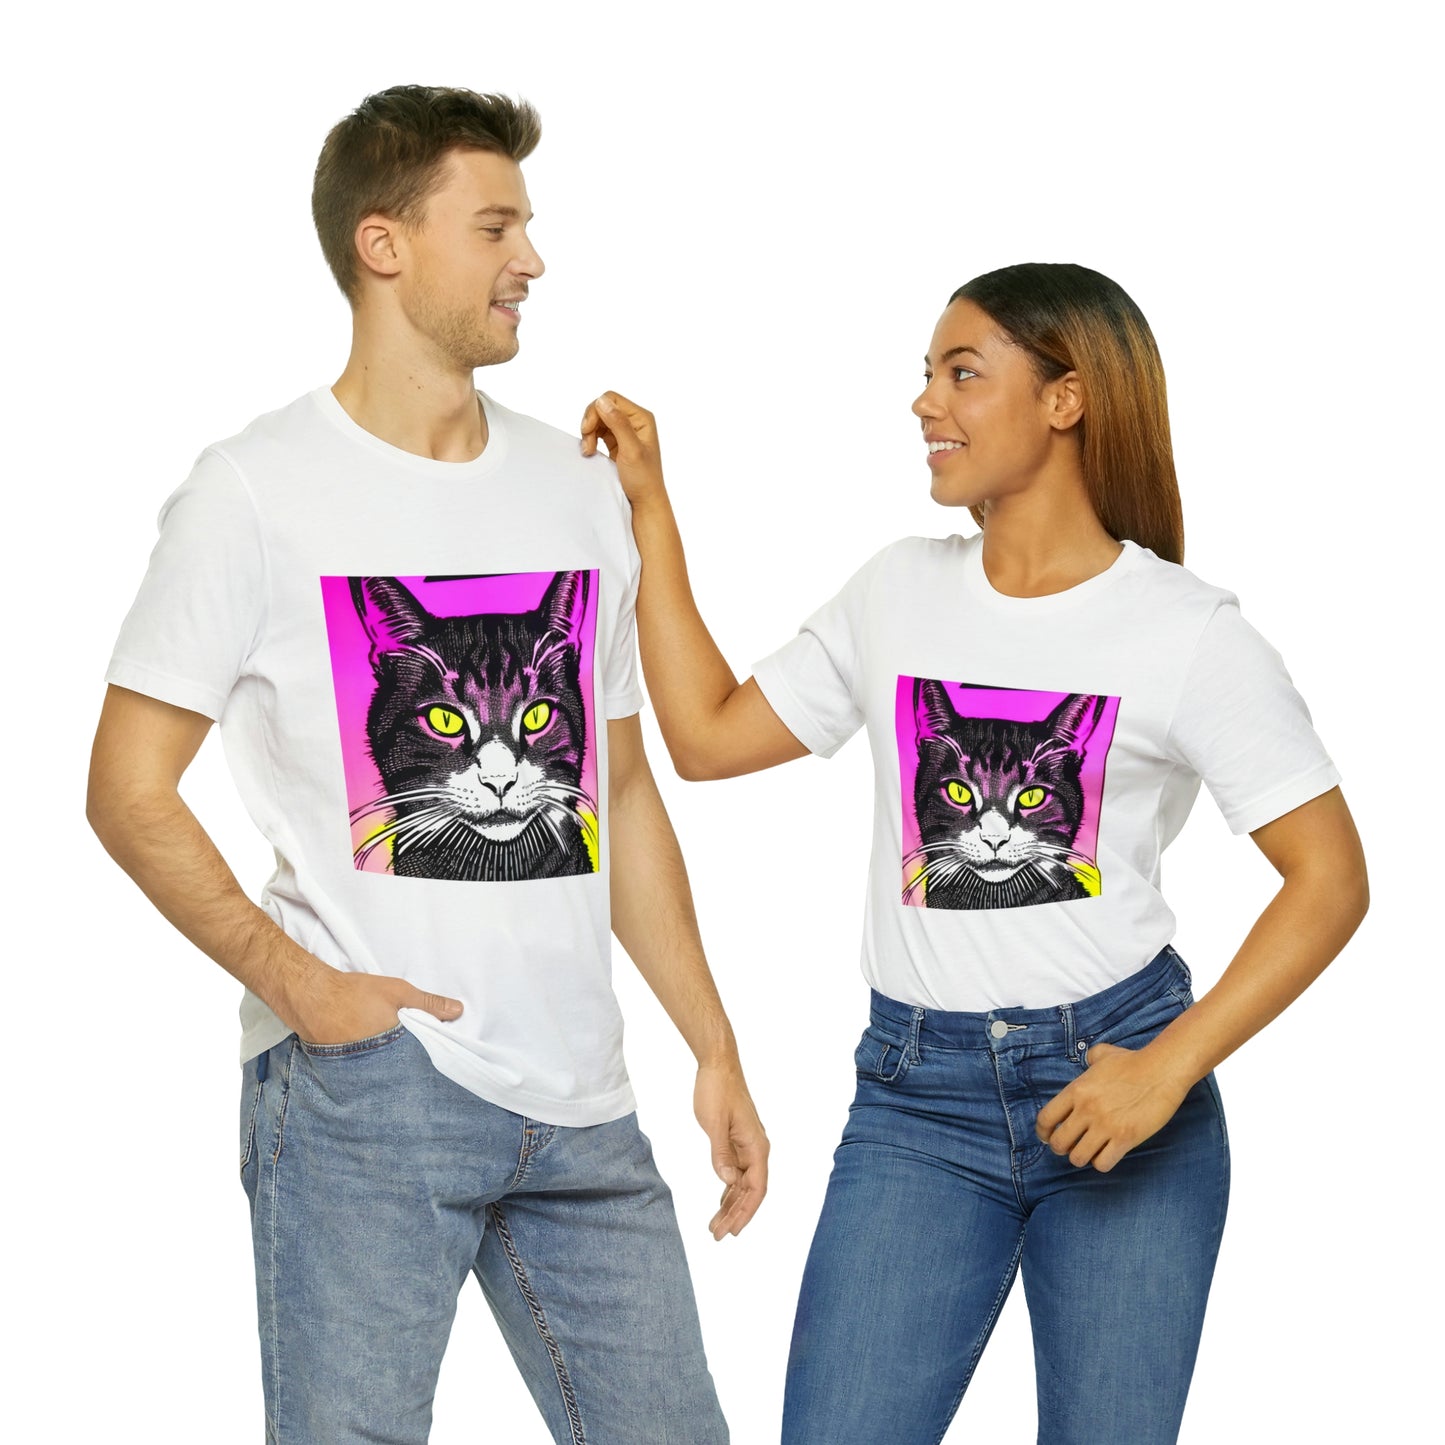 Retro Cat T-Shirt